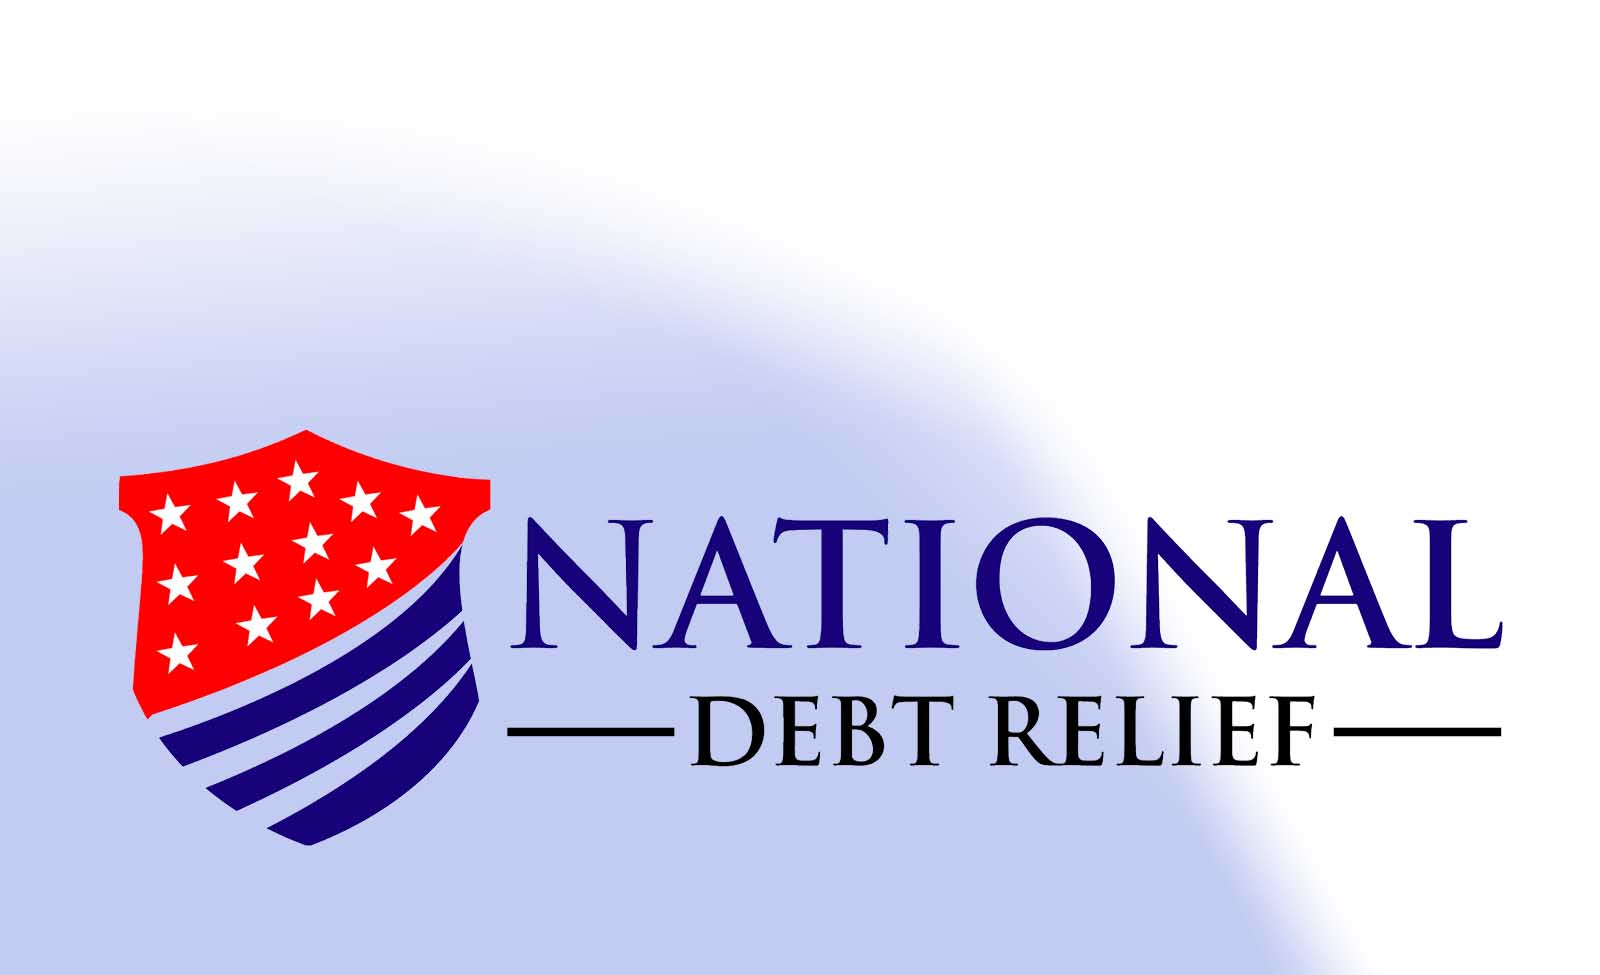 National Debt Relief, Llc - Better Business Bureau® Profile - National Debt Releif